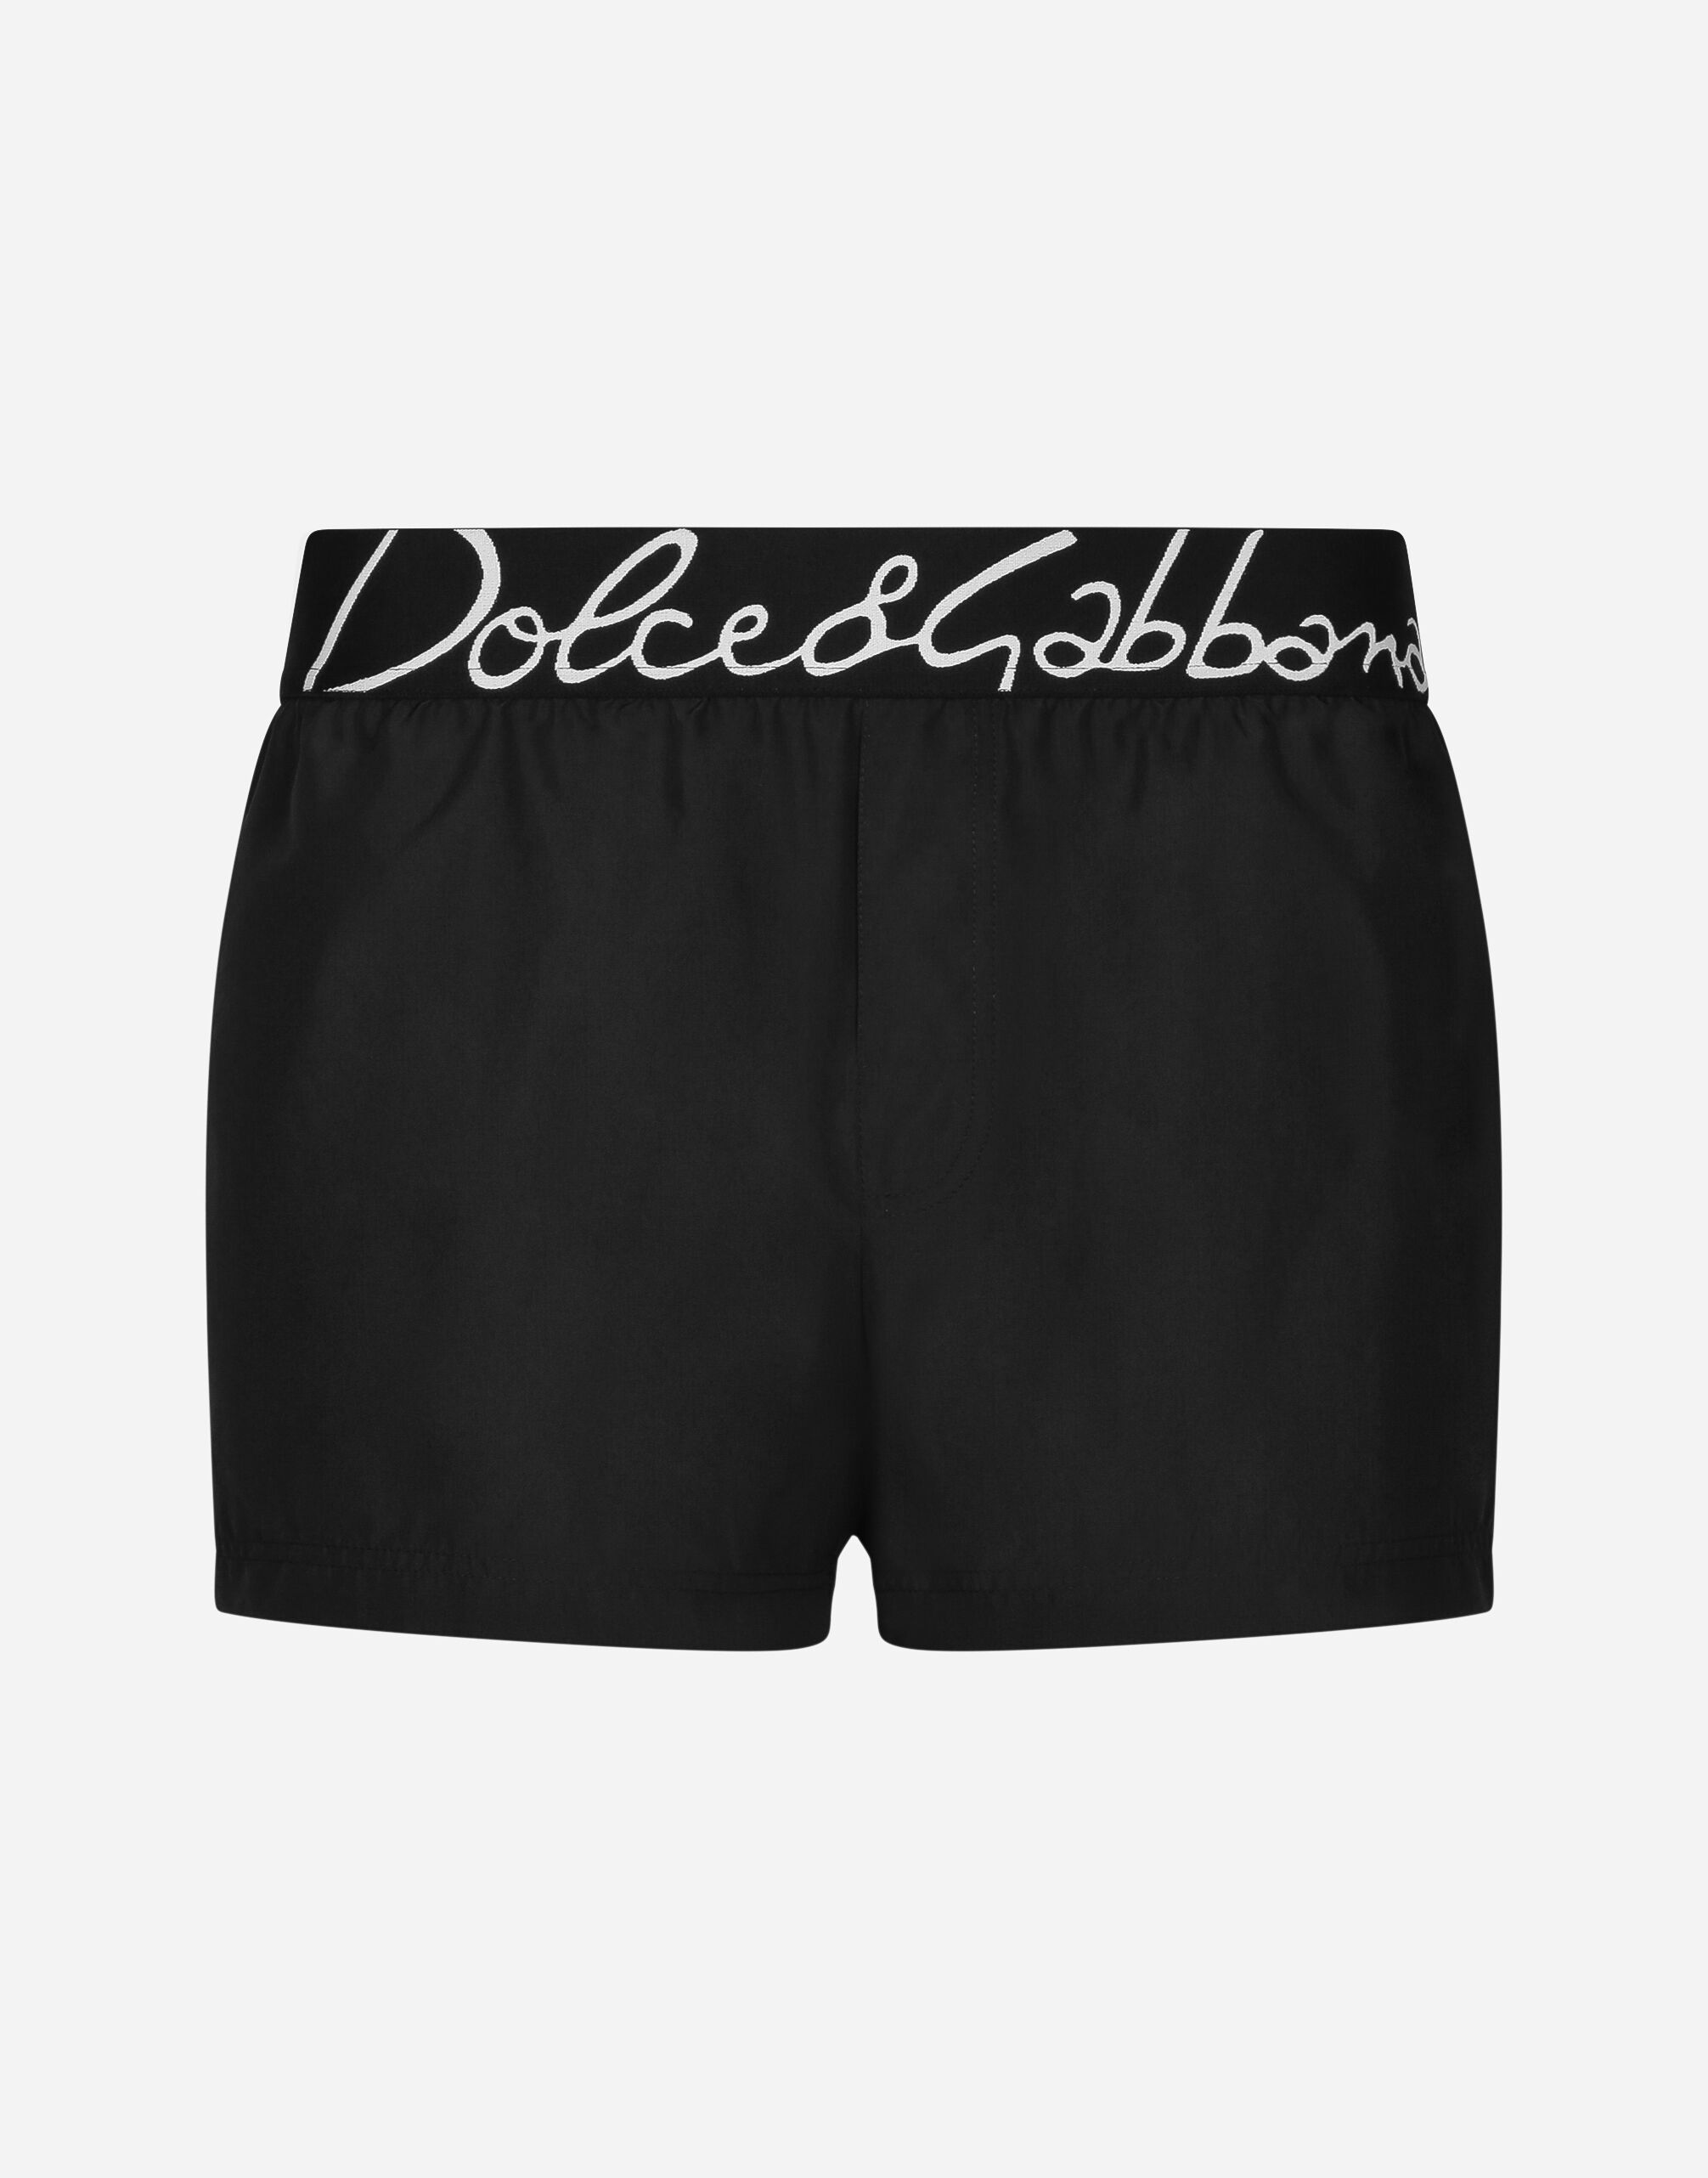 Dolce & Gabbana Short swim trunks with Dolce&Gabbana logo Azure M4A06TFHMU0